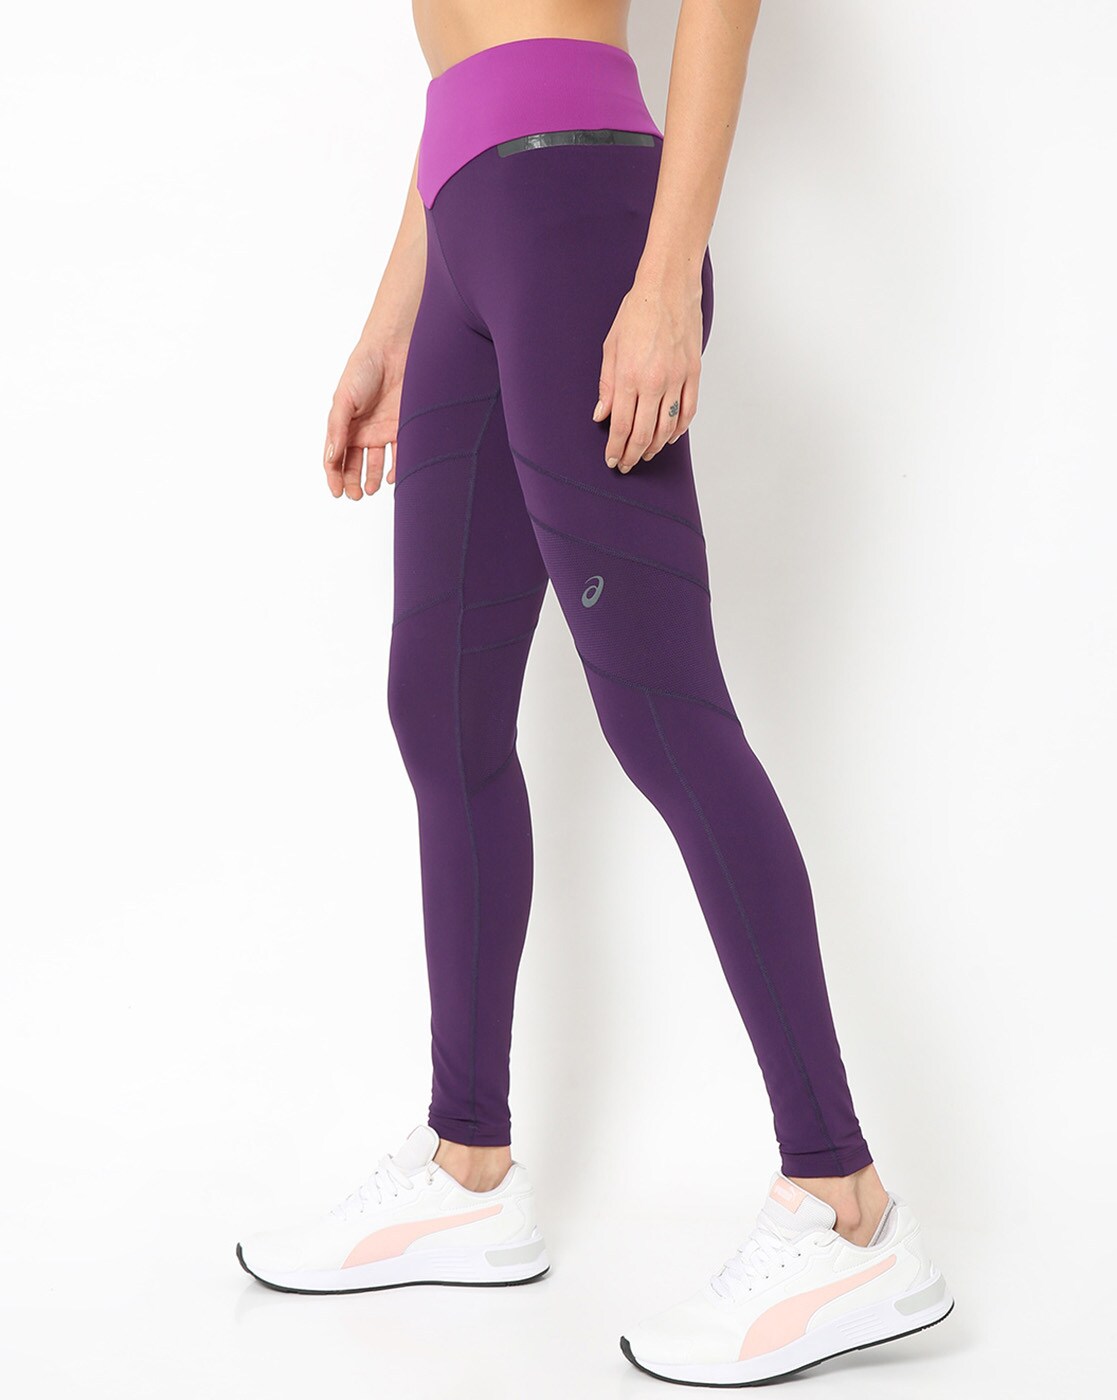 Buy Purple Leggings for Women by ASICS Online